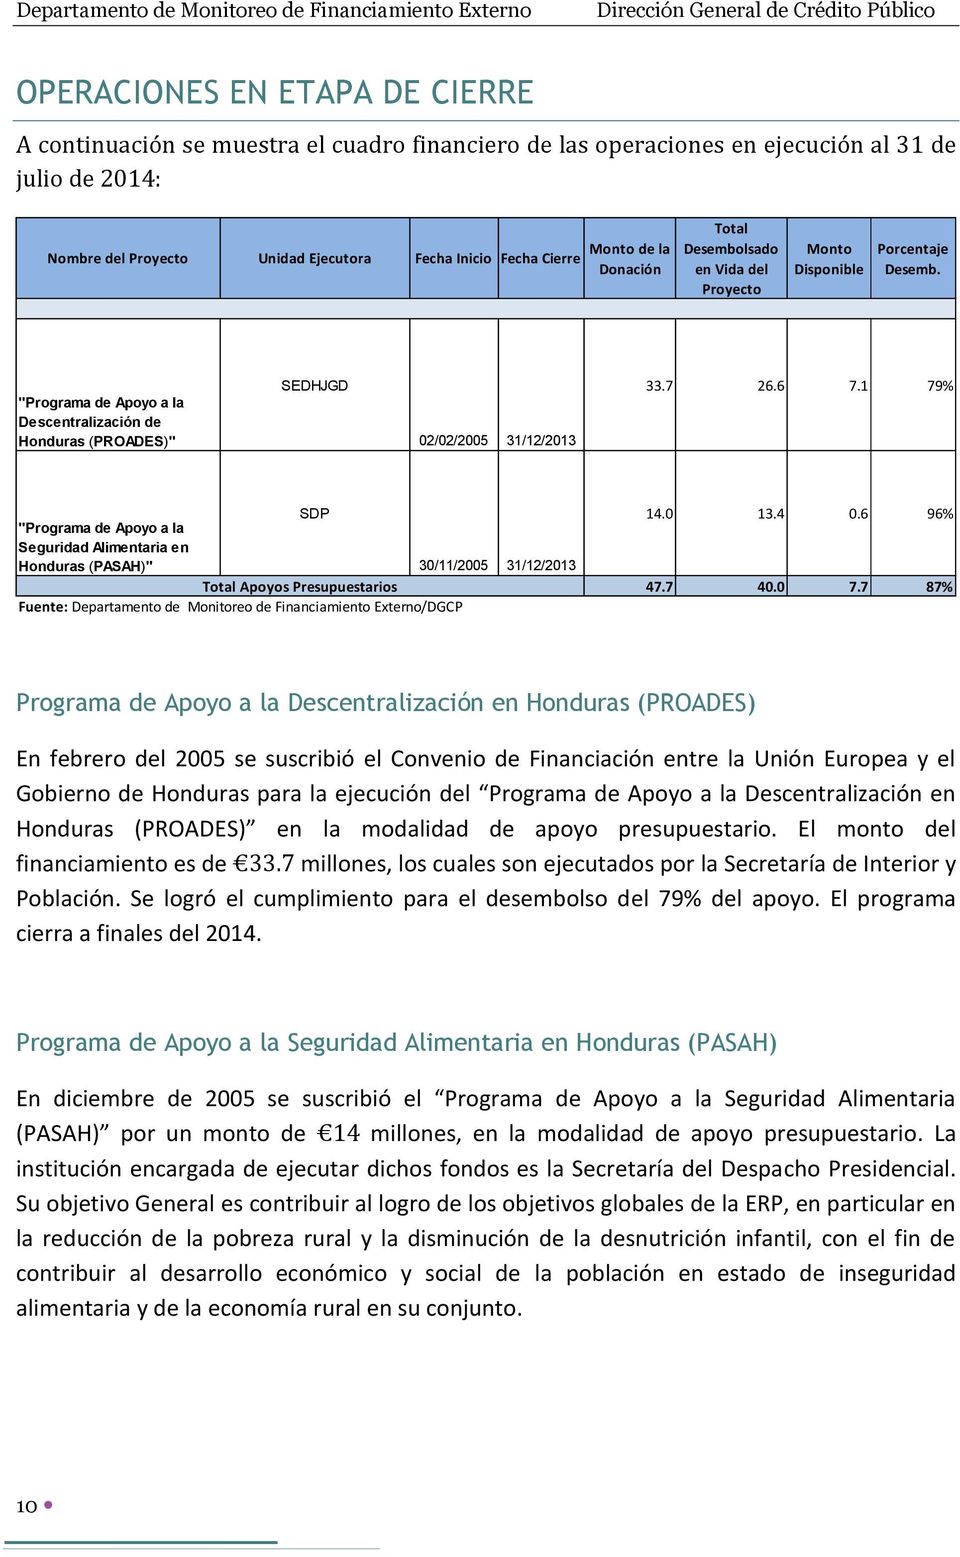 6 7.1 79% SDP "Programa de Apoyo a la Seguridad Alimentaria en Honduras (PASAH)" 30/11/2005 31/12/2013 Total Apoyos Presupuestarios Fuente: Departamento de Monitoreo de Financiamiento Externo/DGCP 14.